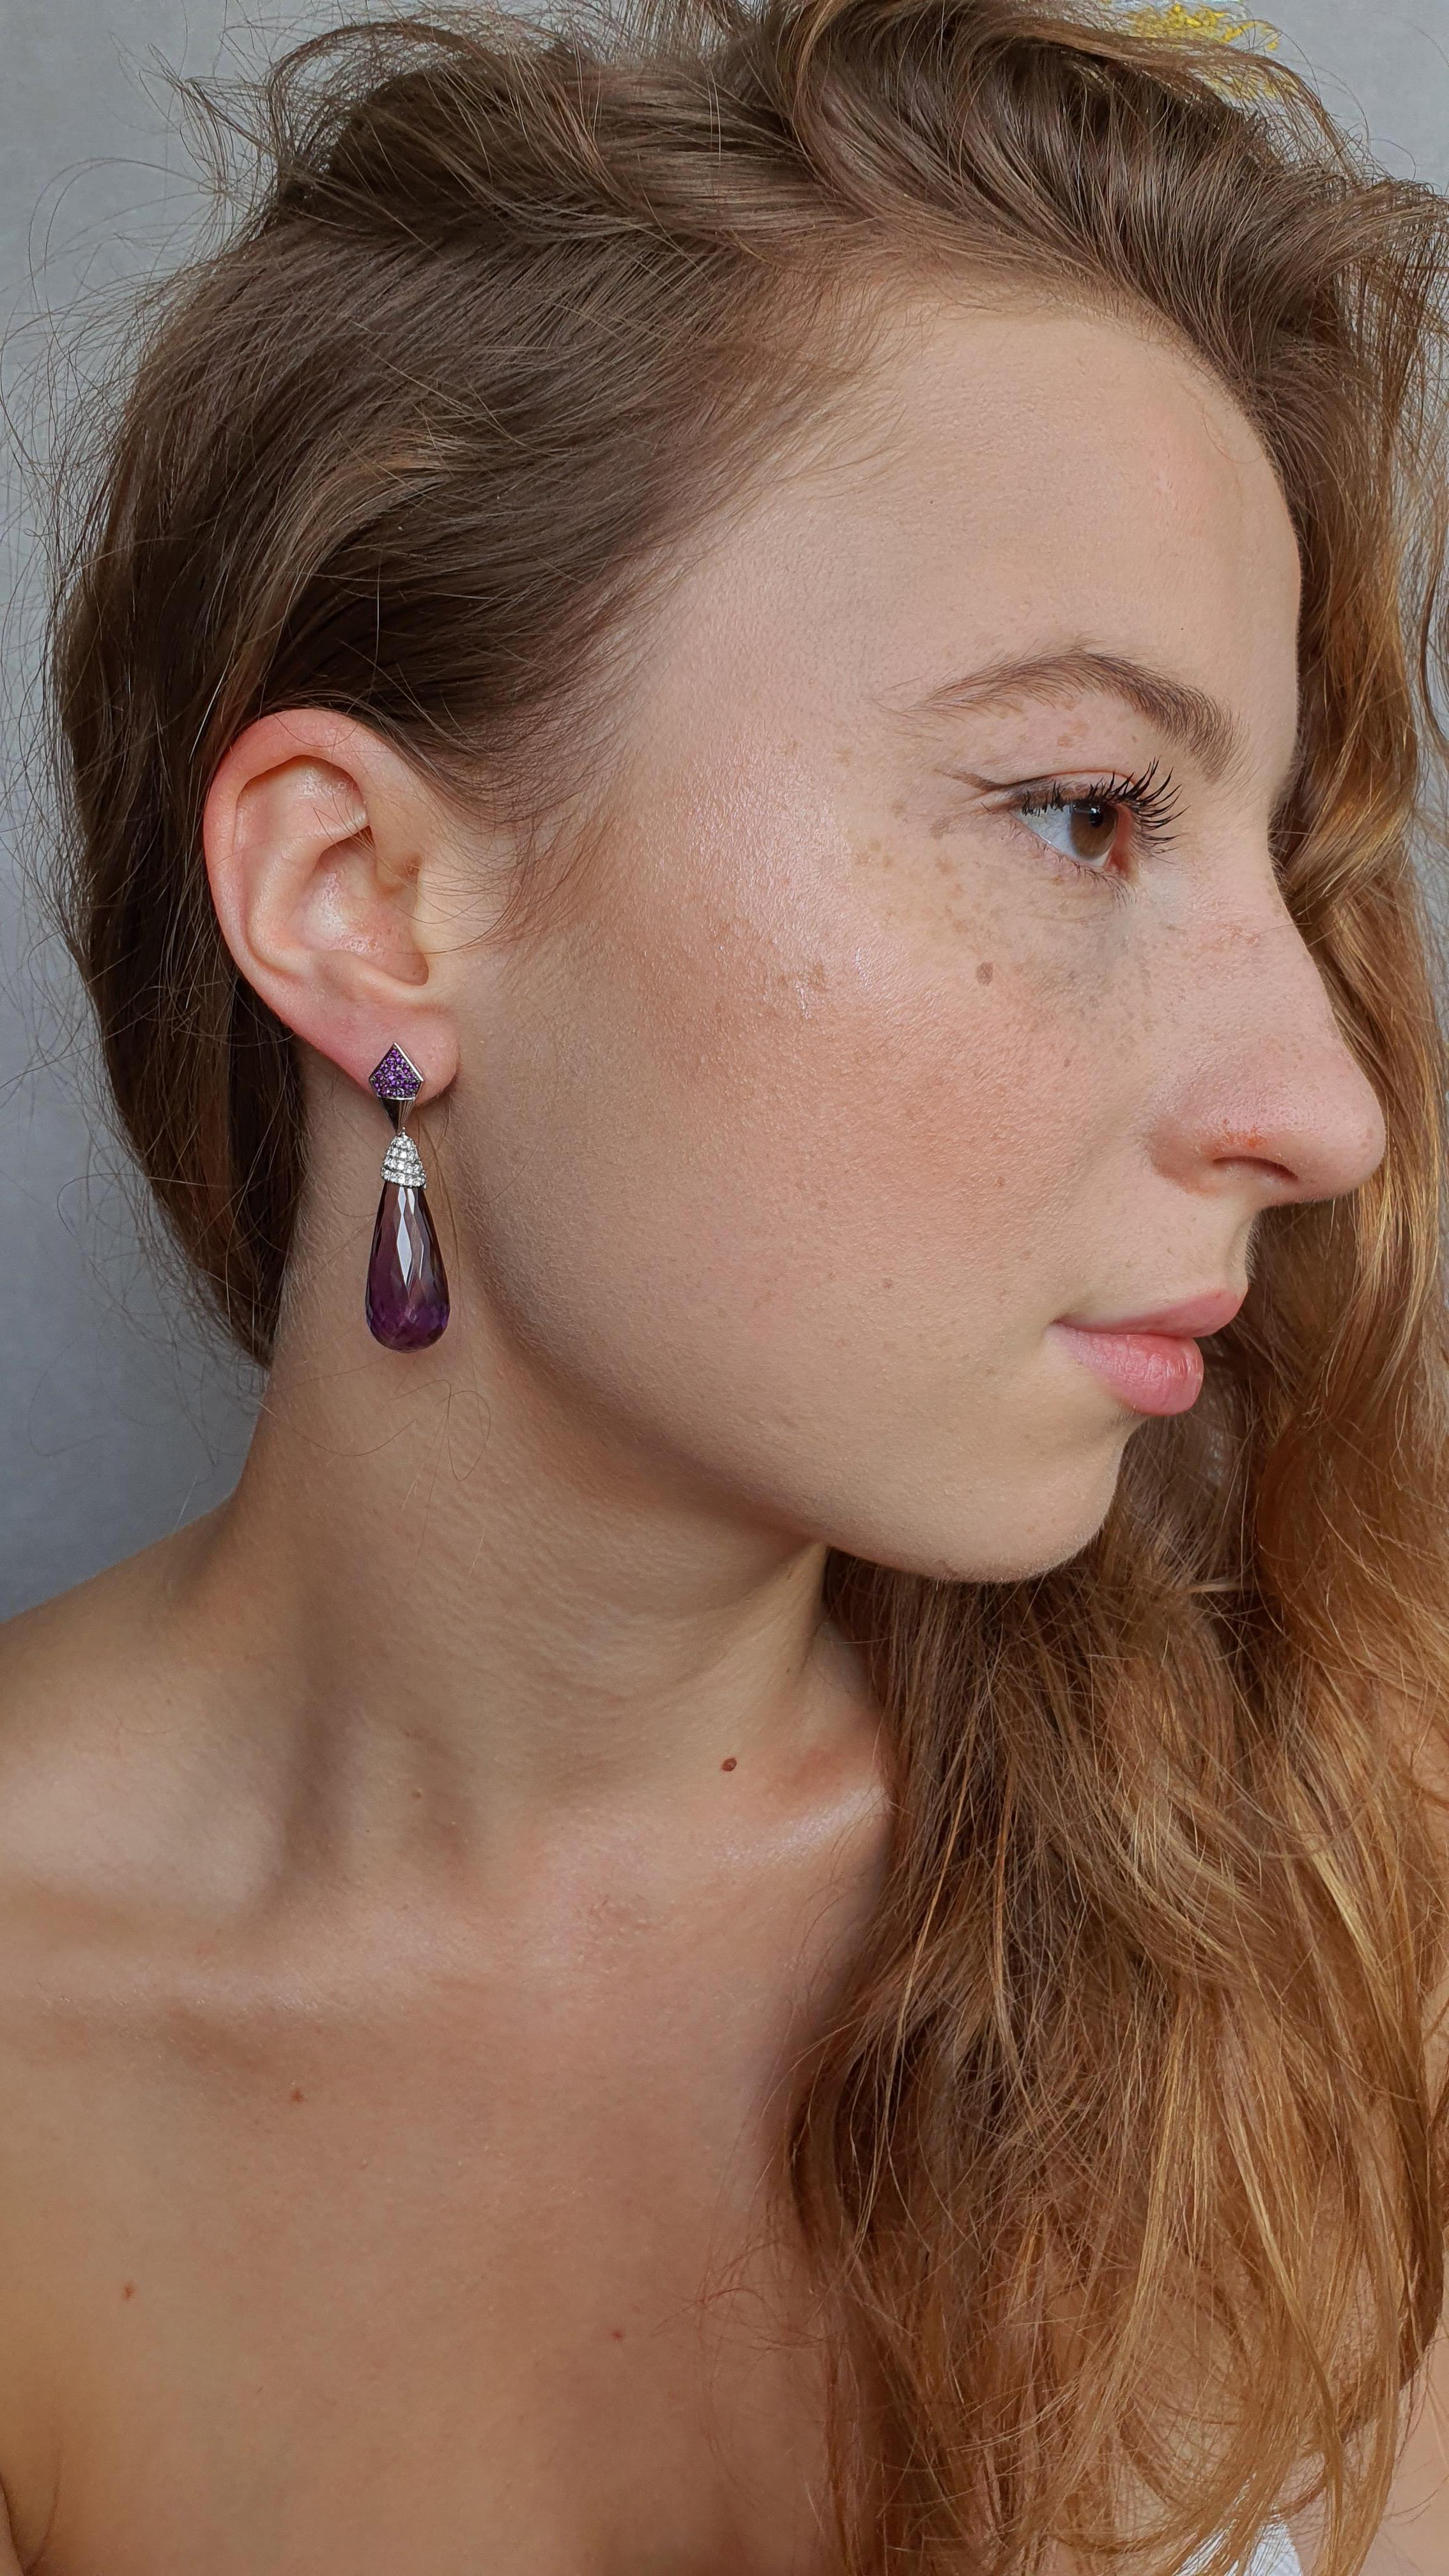 Ces magnifiques boucles d'oreilles présentent des améthystes de 42,79 carats en forme de pampilles et 96 diamants ronds. Les pierres précieuses violettes sont souvent associées à la royauté et au pouvoir.  ce qui rend ces boucles d'oreilles plus